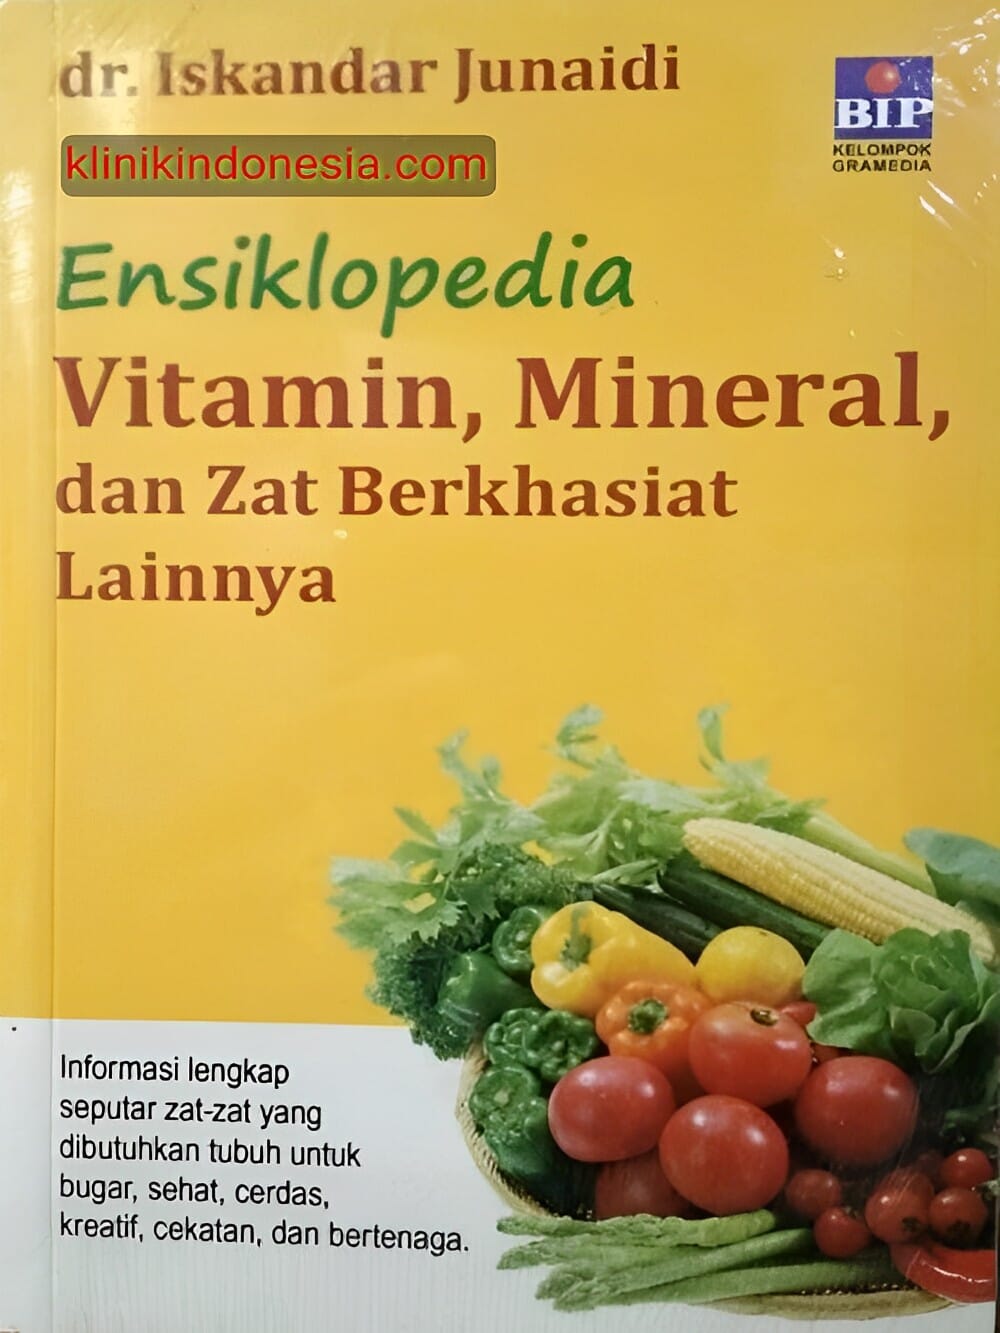 Gambar Ensiklopedia Vitamin, Mineral dan Zat Berkhasiat Lainnya